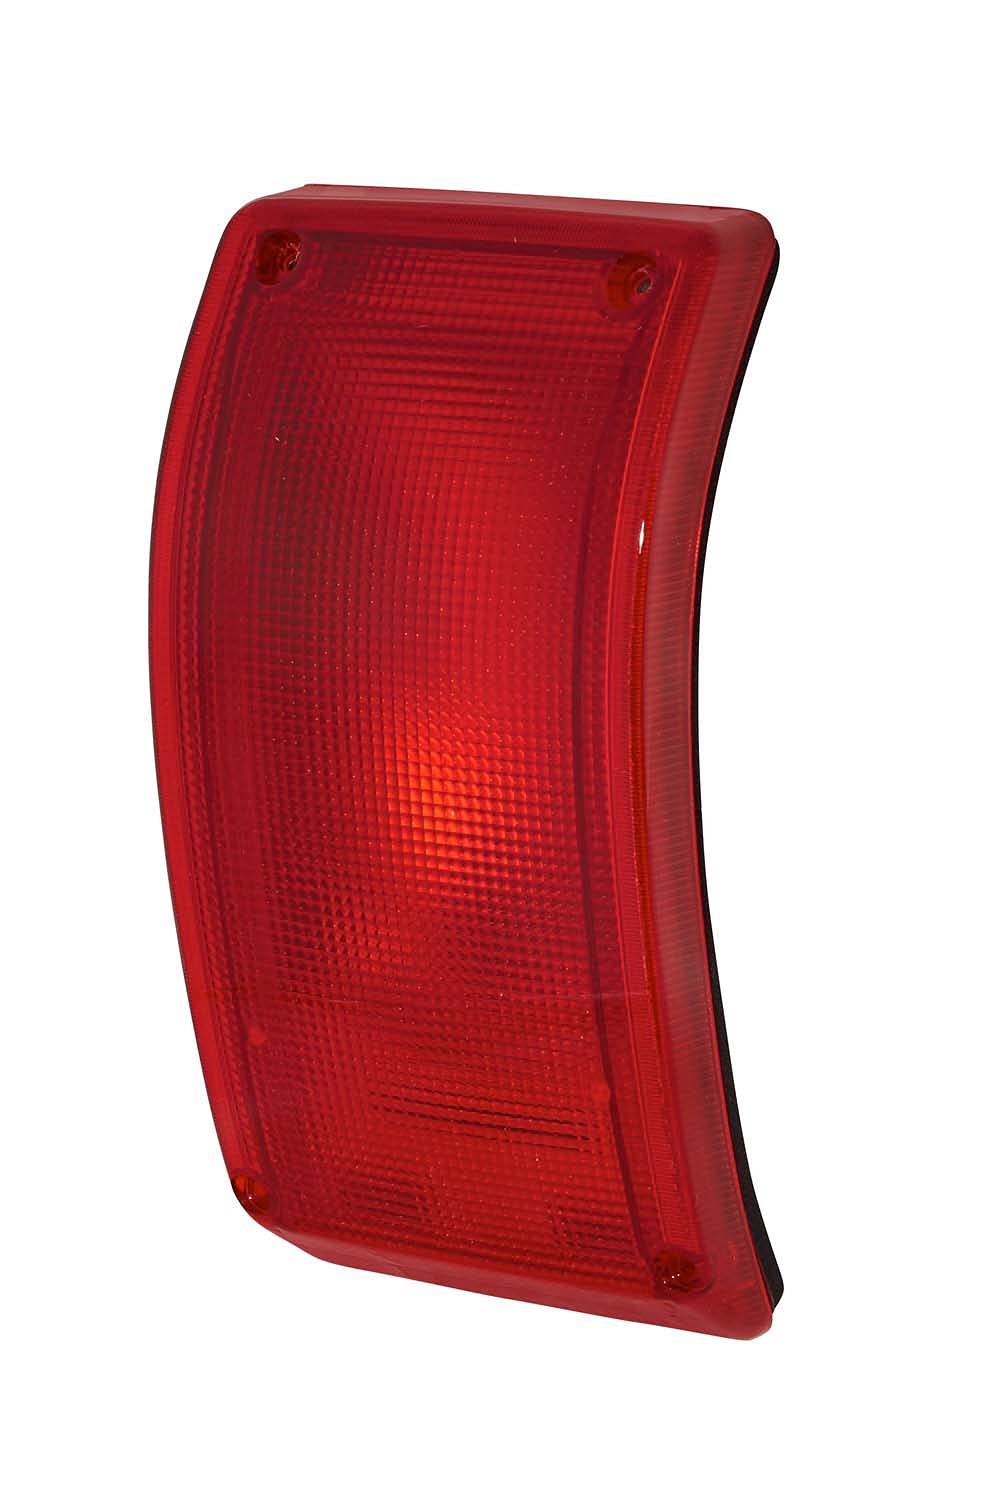 HELLA - Schlussleuchte - Halogen - 24/12V - Einbau - Lichtscheibenfarbe: rot - Stecker: Flachstecker - rechts/links - 2SA 005 603-021